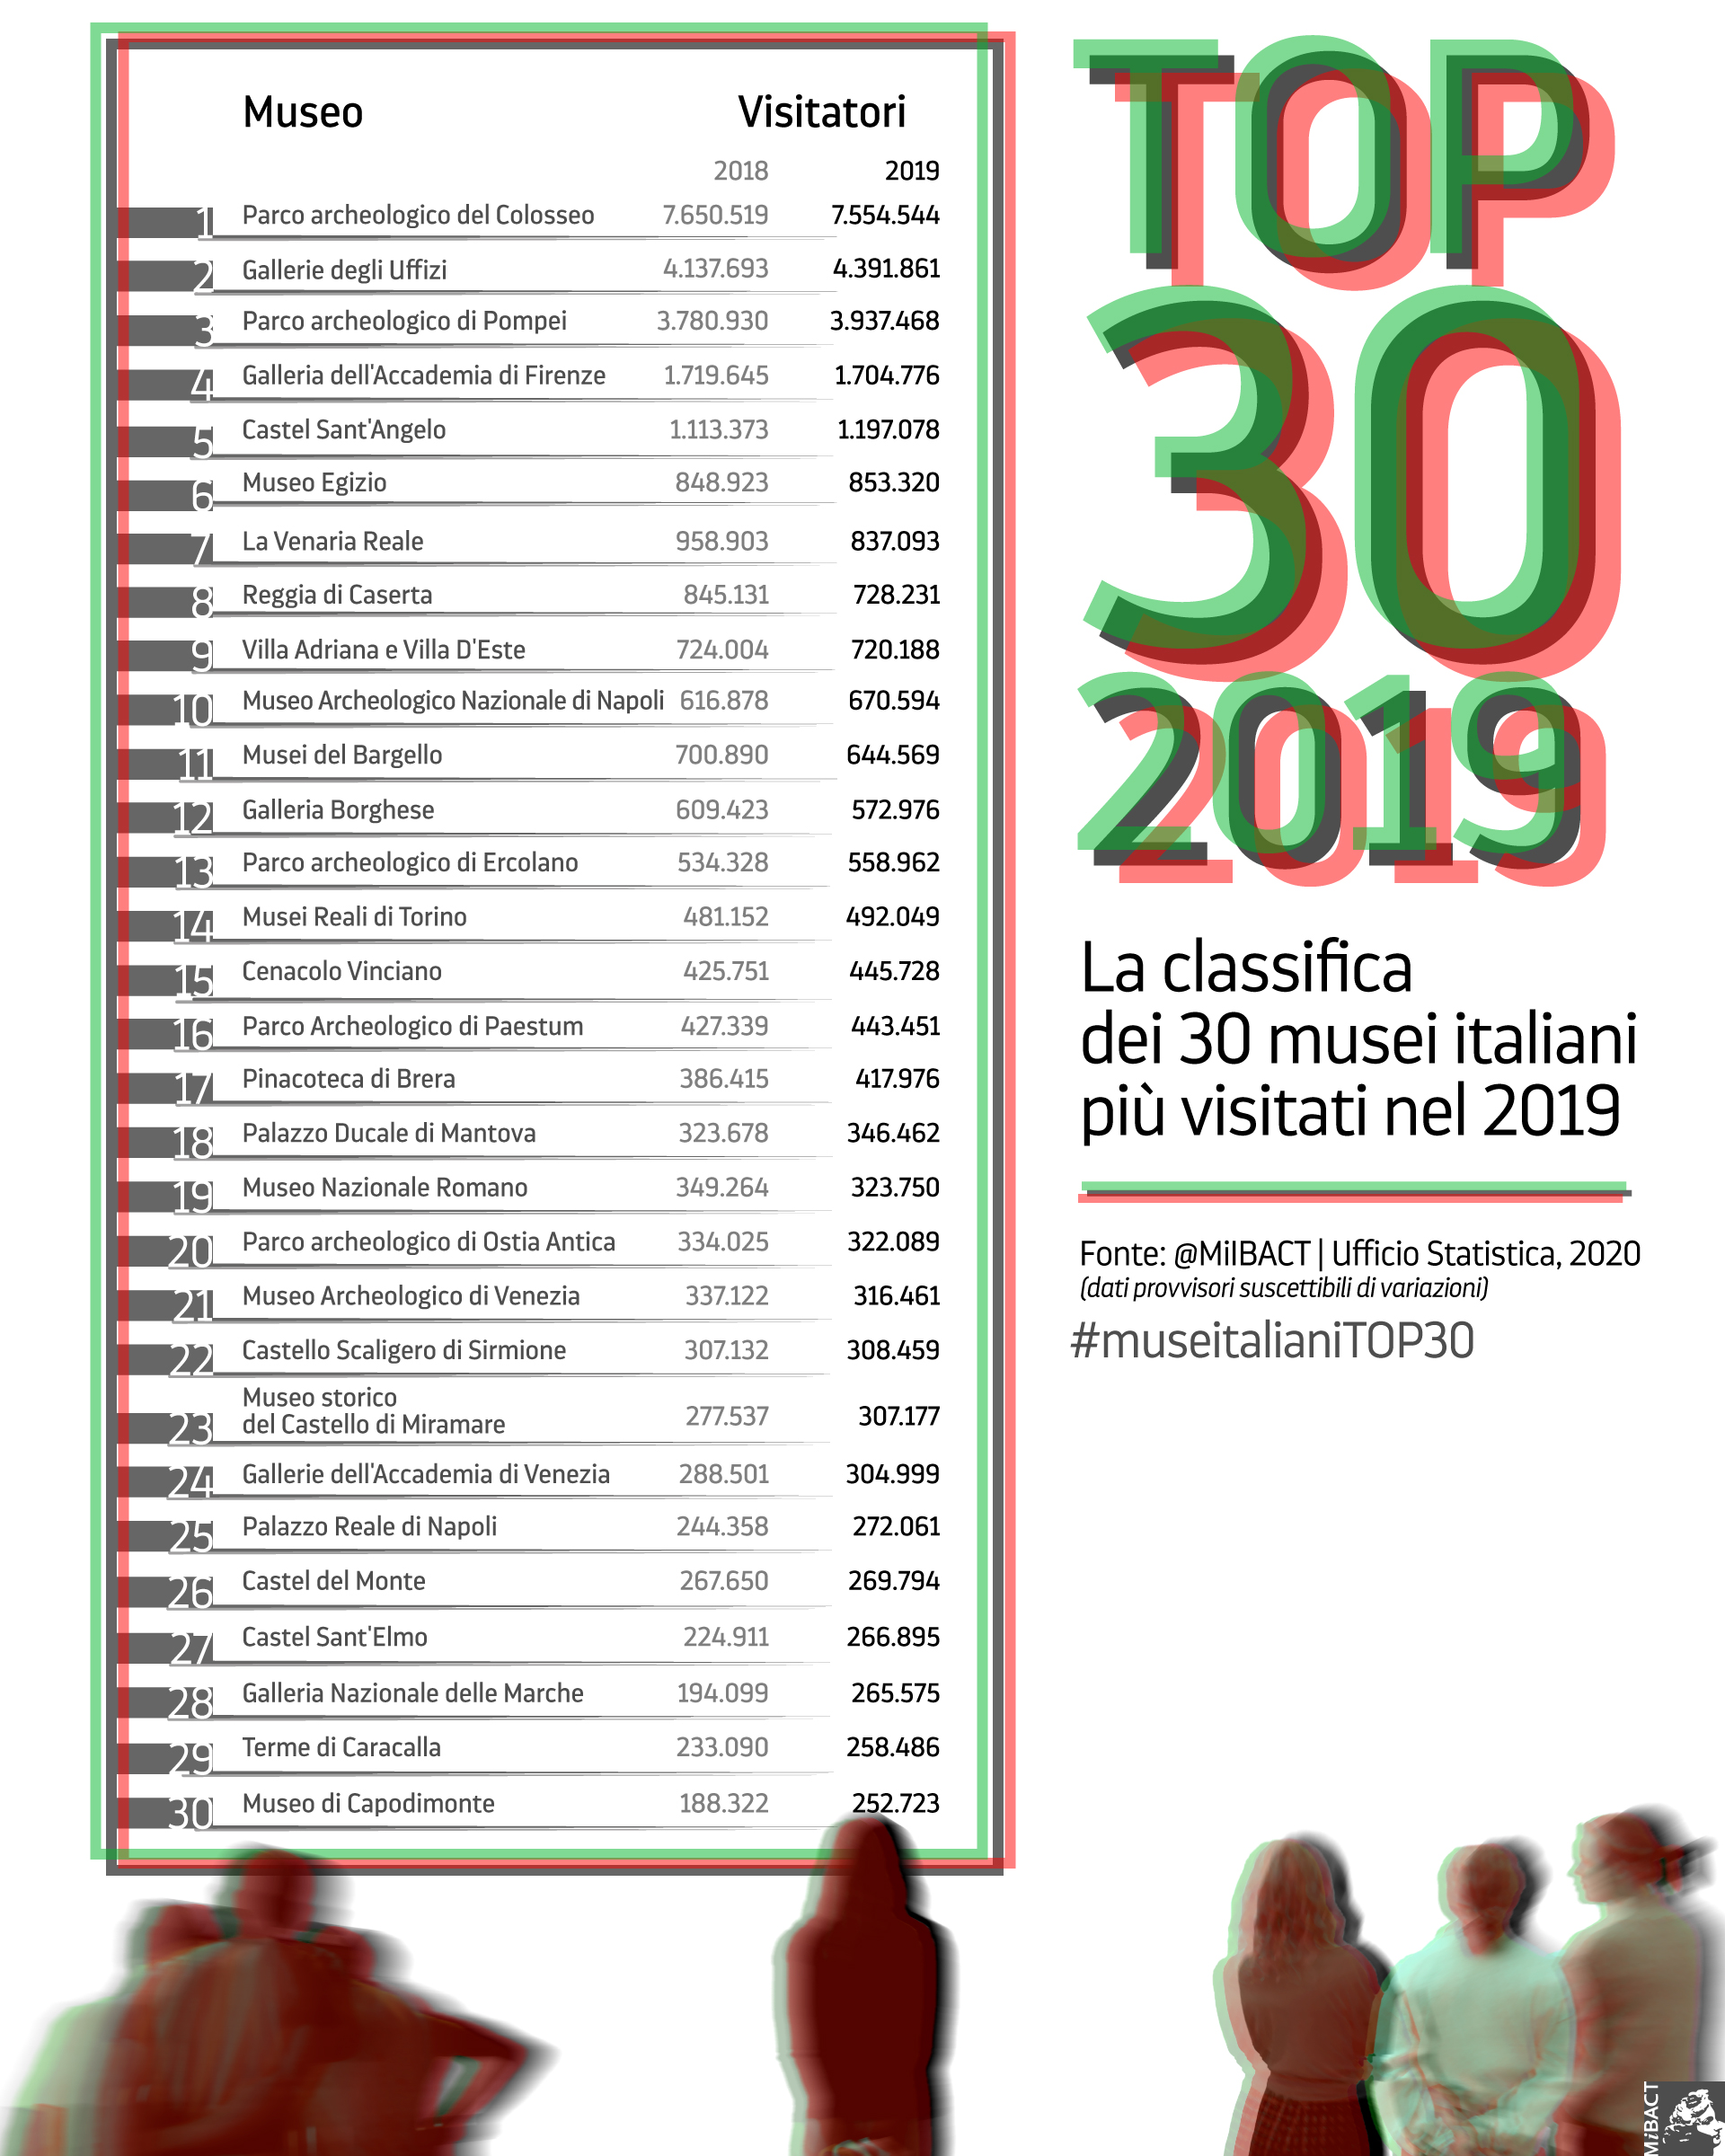 NEWS / MUSEI:  TOP 30  2019  Franceschini: autonomia funziona, andiamo avanti su percorso innovazione